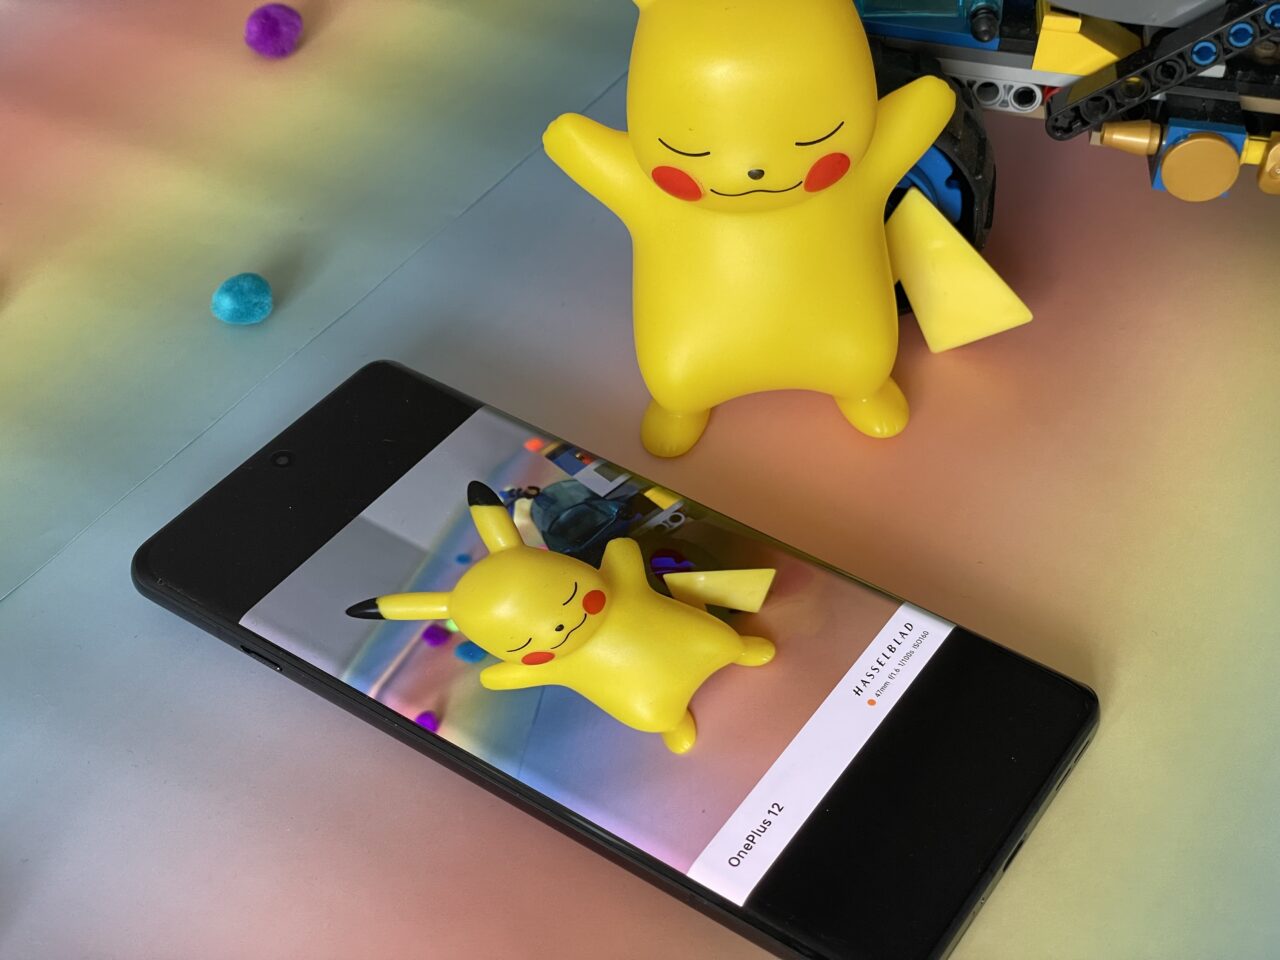 Zdjęcie figury Pikachu obok smartfona, na ekranie którego jest wyświetlone zdjęcie tej samej figurki Pikachu, z nieostrymi kolorowymi światłami w tle. Obok leży zabawka z klocków konstrukcyjnych.